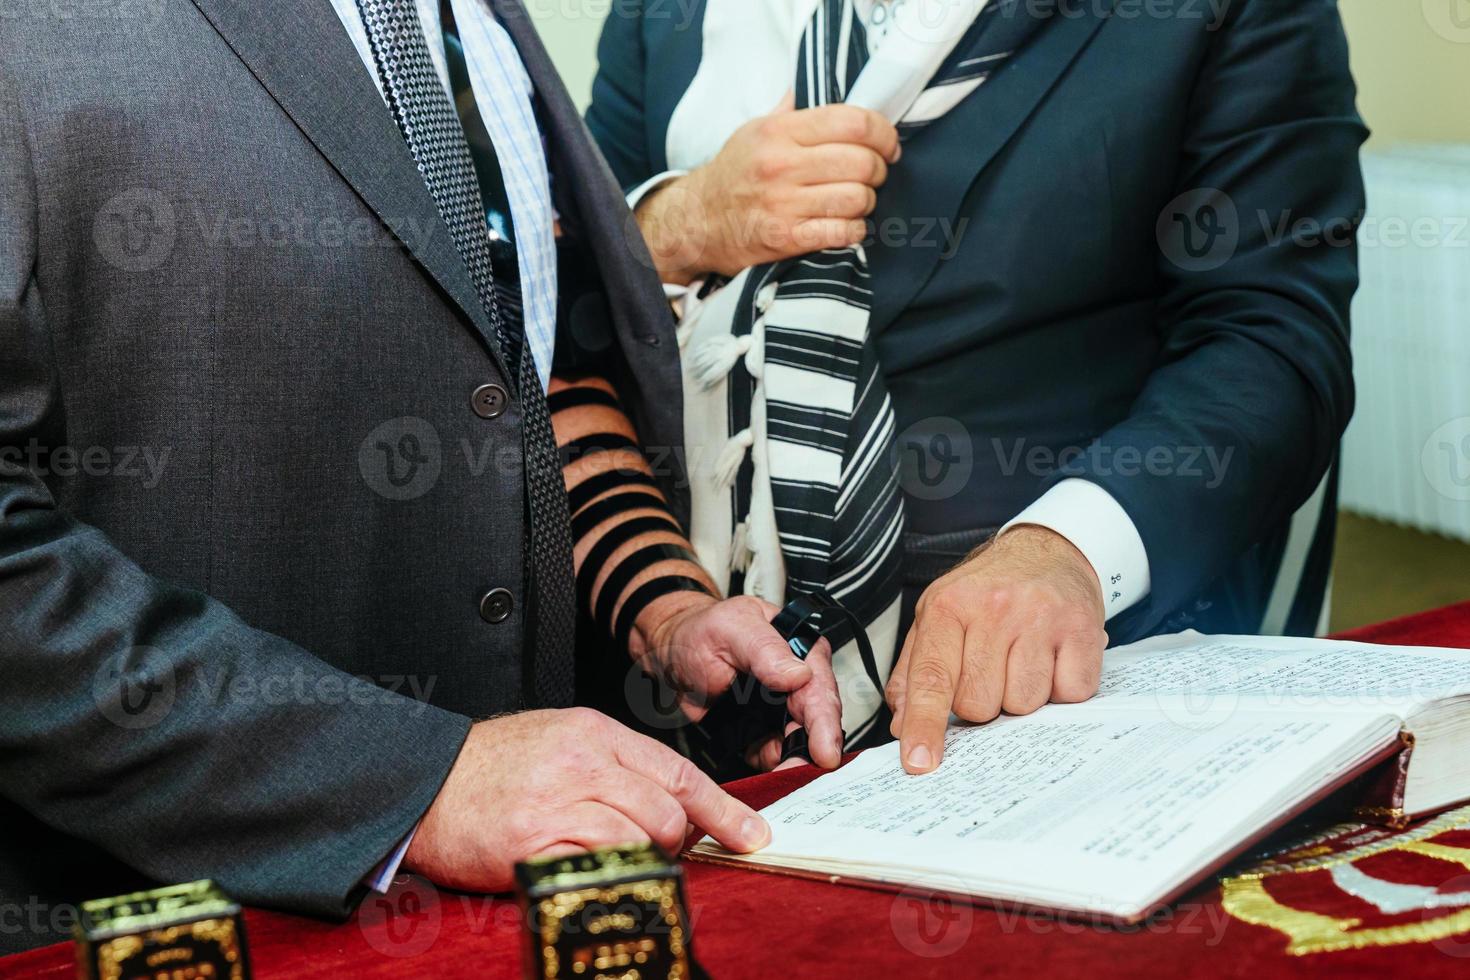 mano del ragazzo che legge la torah ebraica al bar mitzvah foto